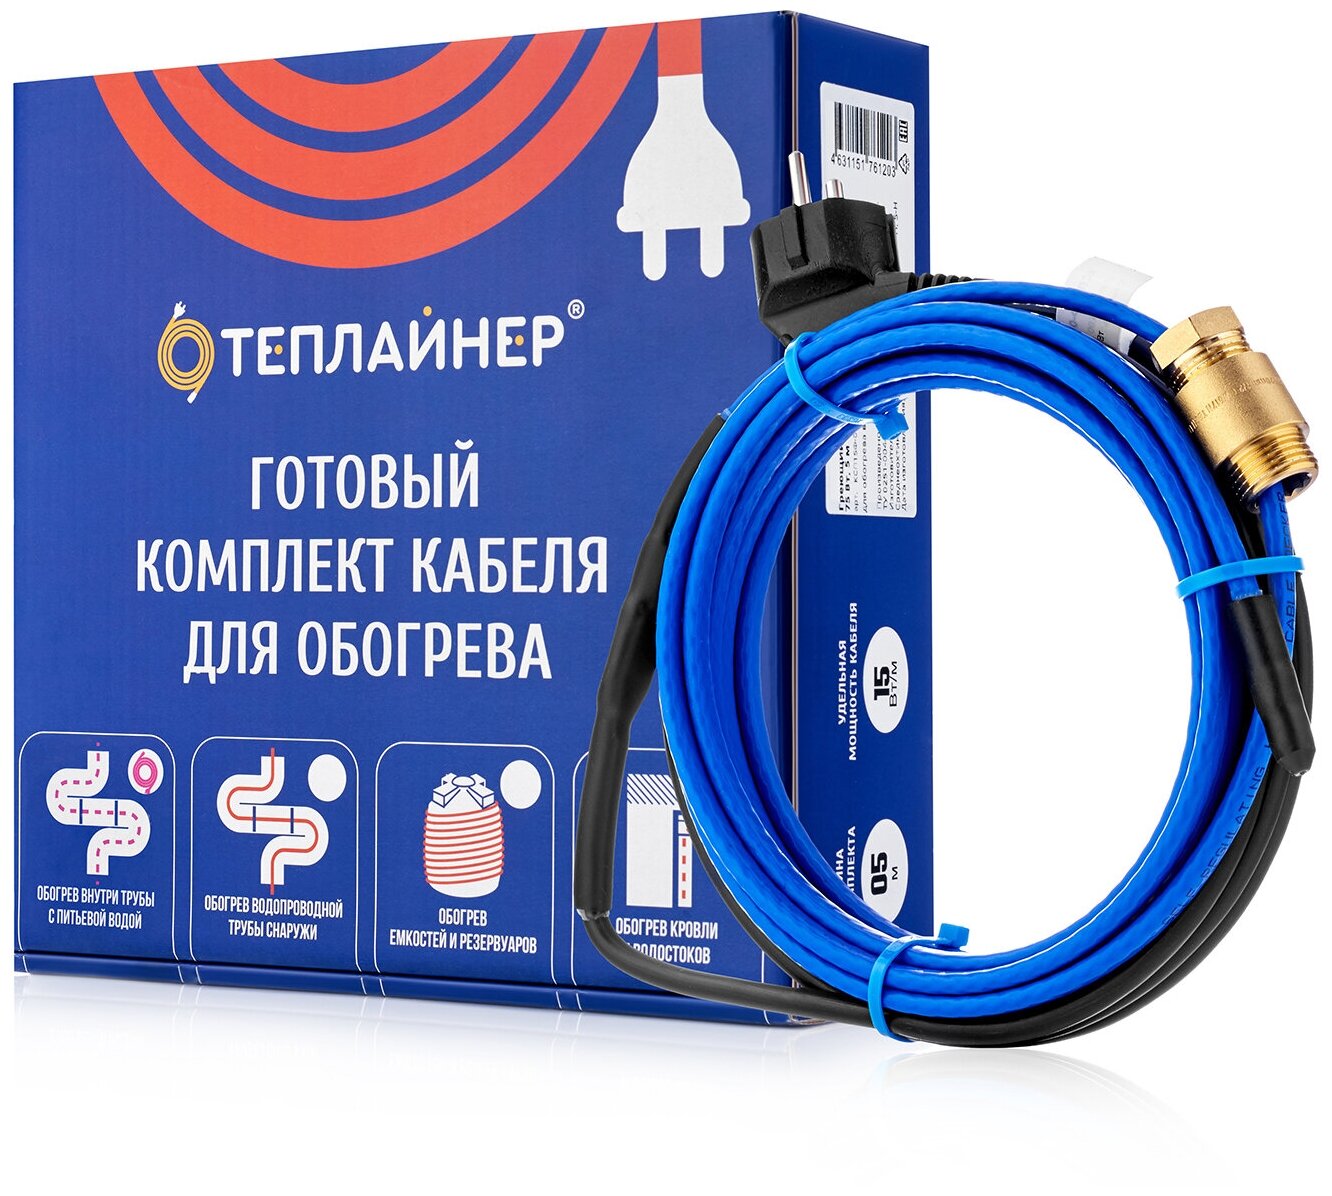 Греющий кабель теплайнер PROFI КСП-10, 50 Вт, 5 м - фотография № 1